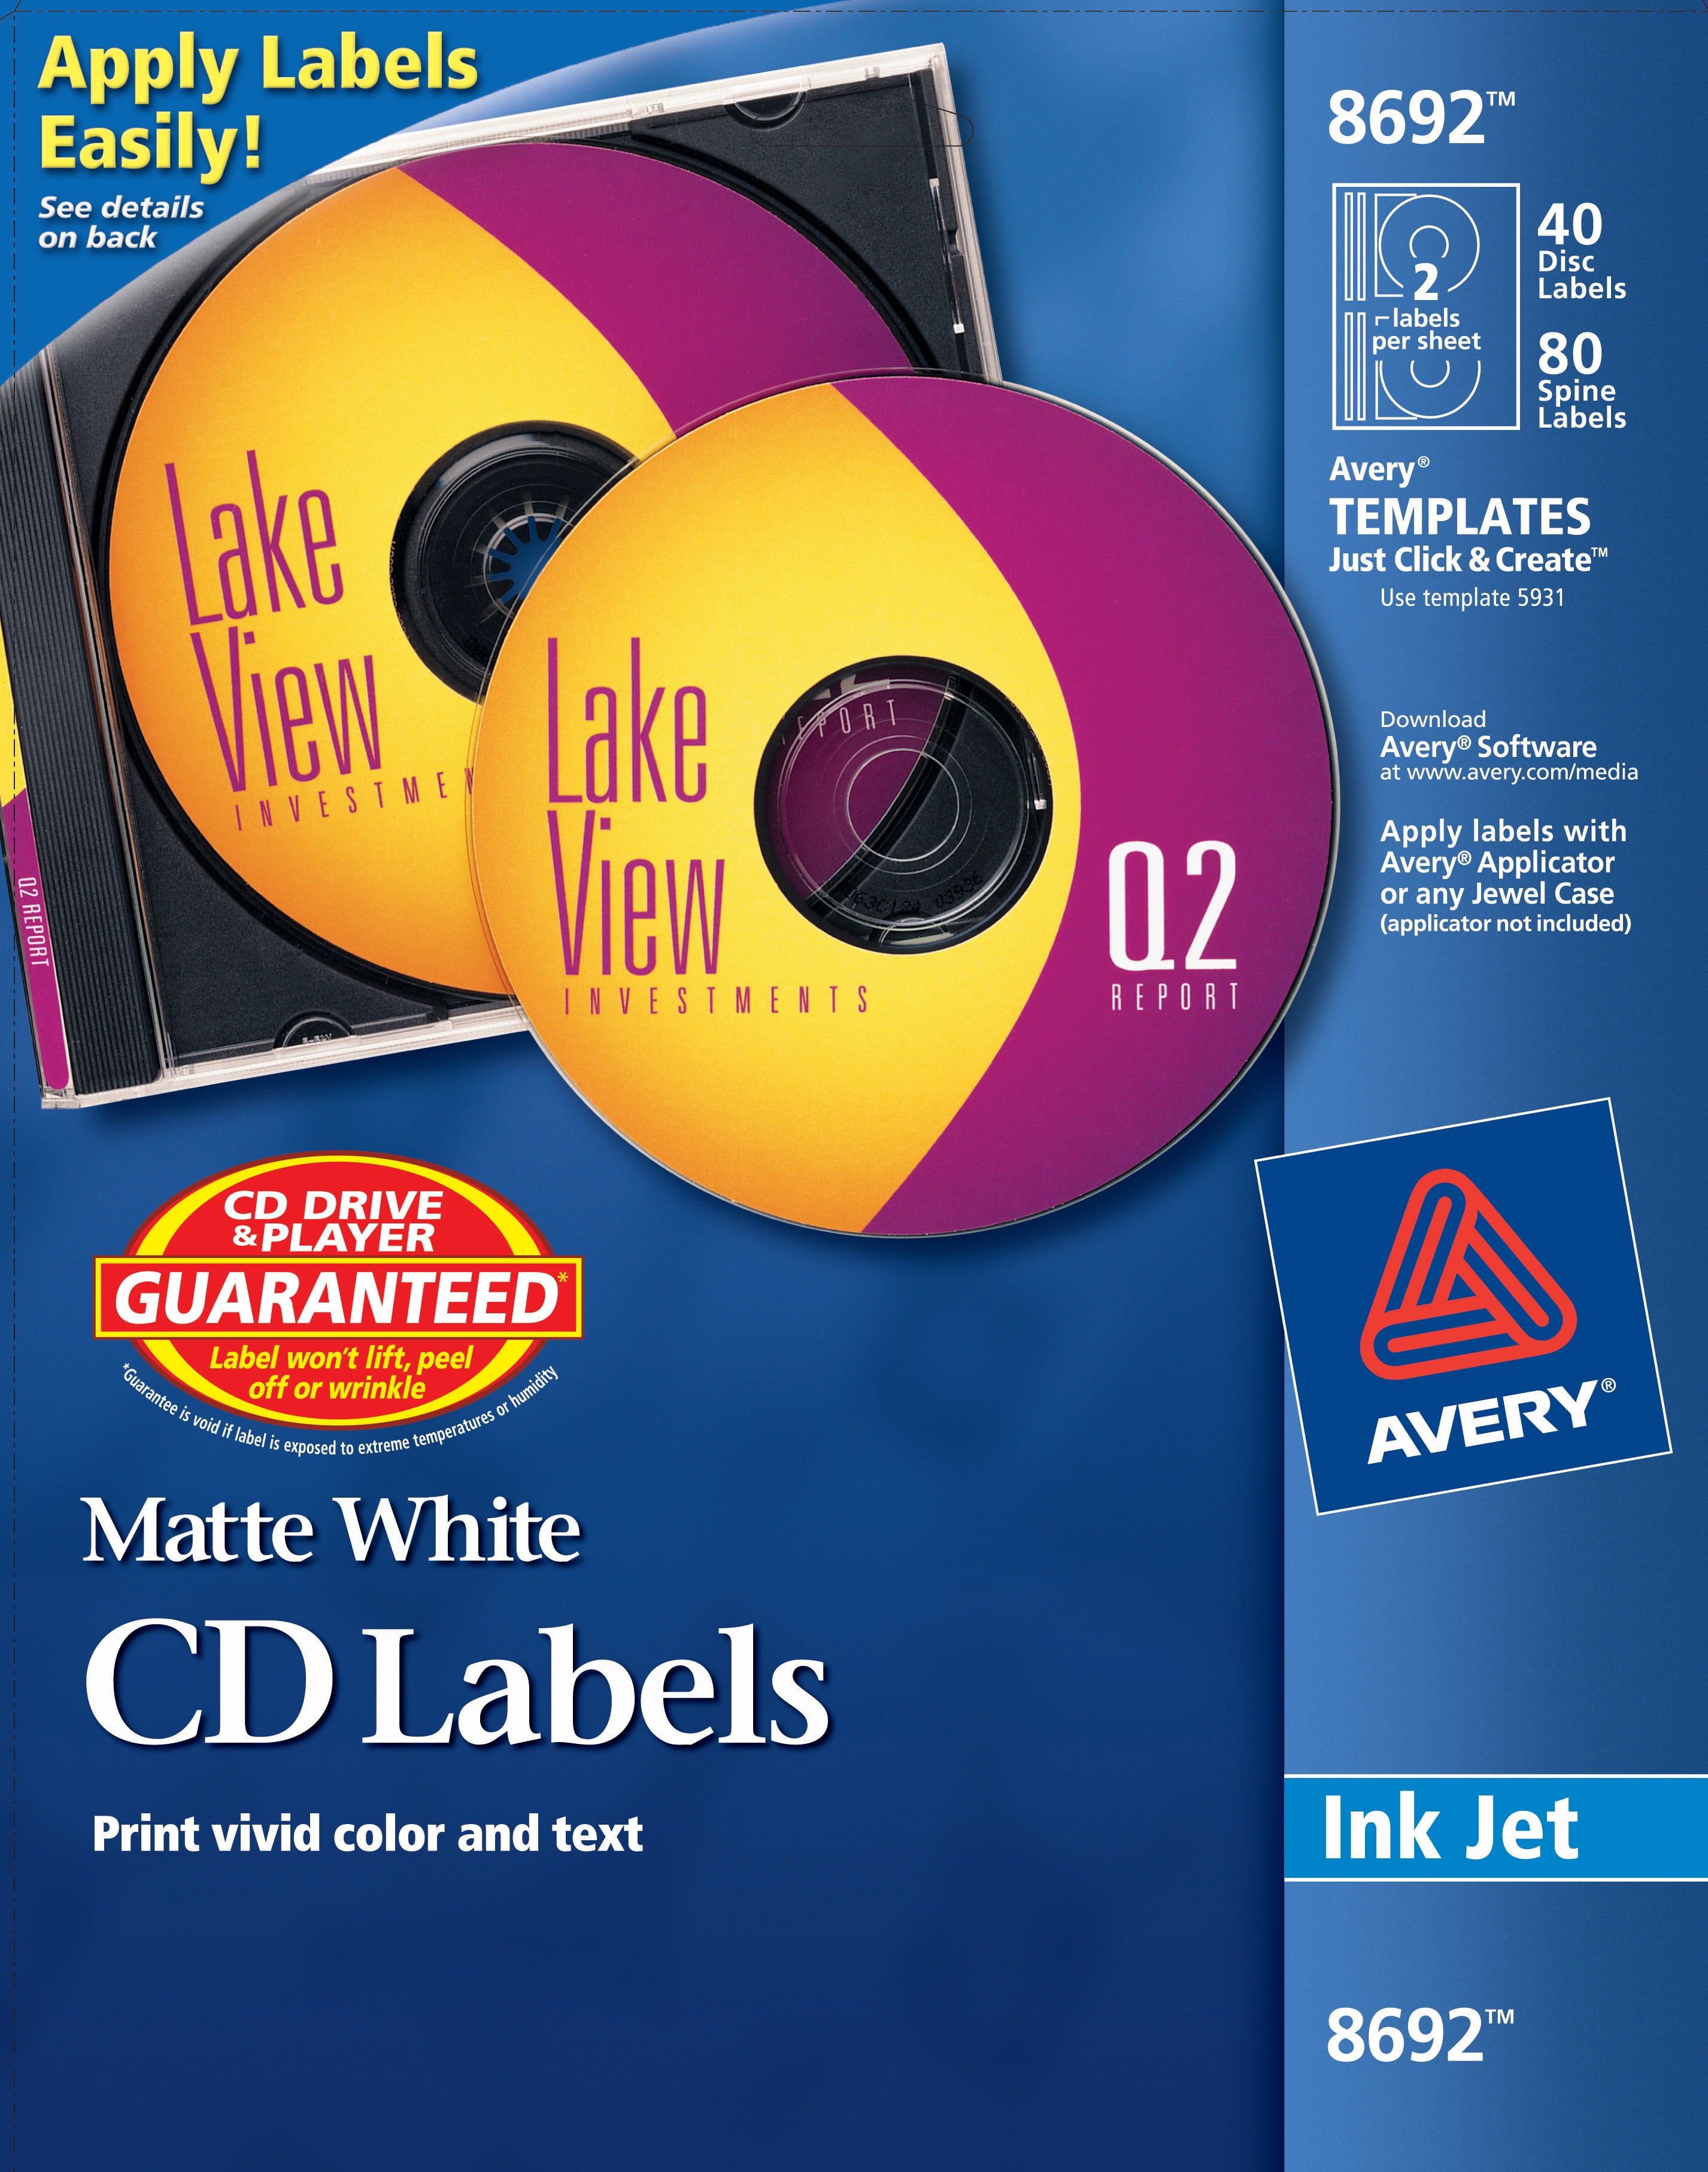 64 Spine Labels 32 CD New 2 Packs Avery 28669 Matte White CD Labels Inkjet